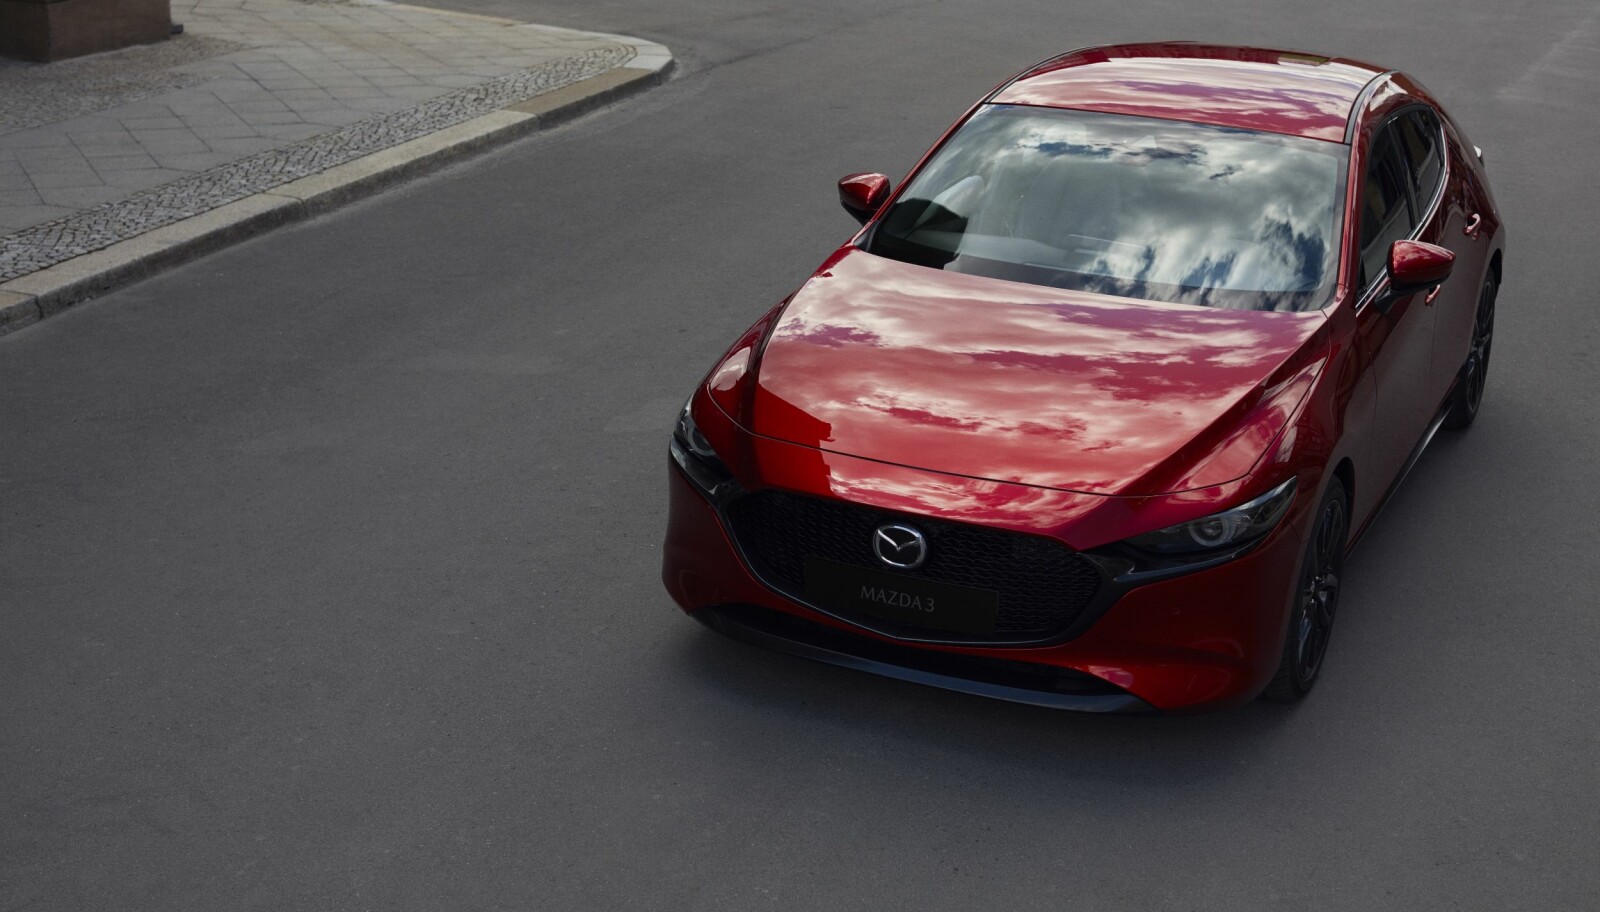 TIL NORGE: Allerede i mars kommer de første versjonene av Mazda3 til Norge.